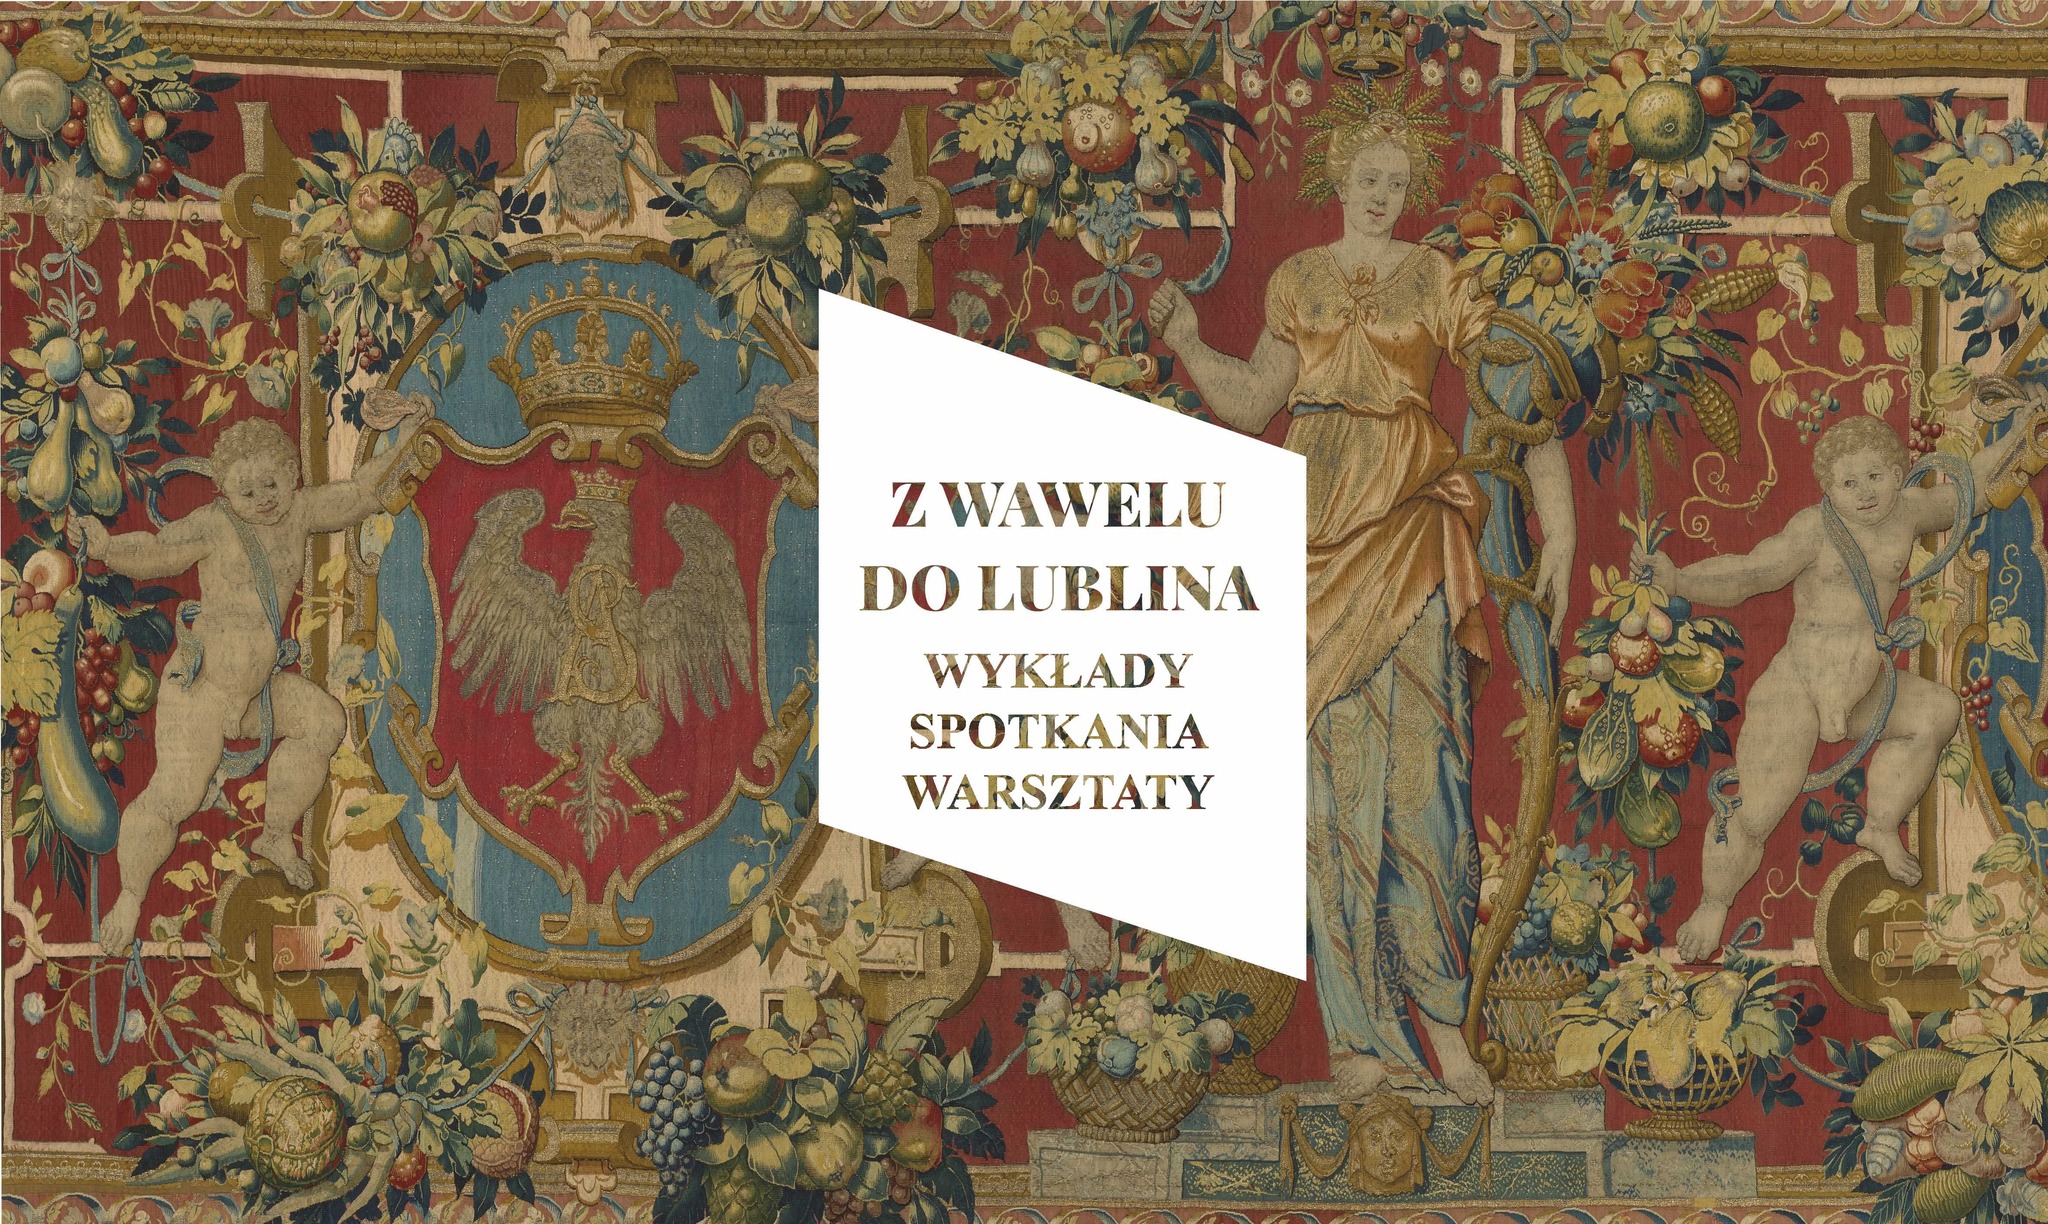 napis z Wawelu do Lublina wykłady spotkania warsztaty, w tle haftowana kolorowa tkanina